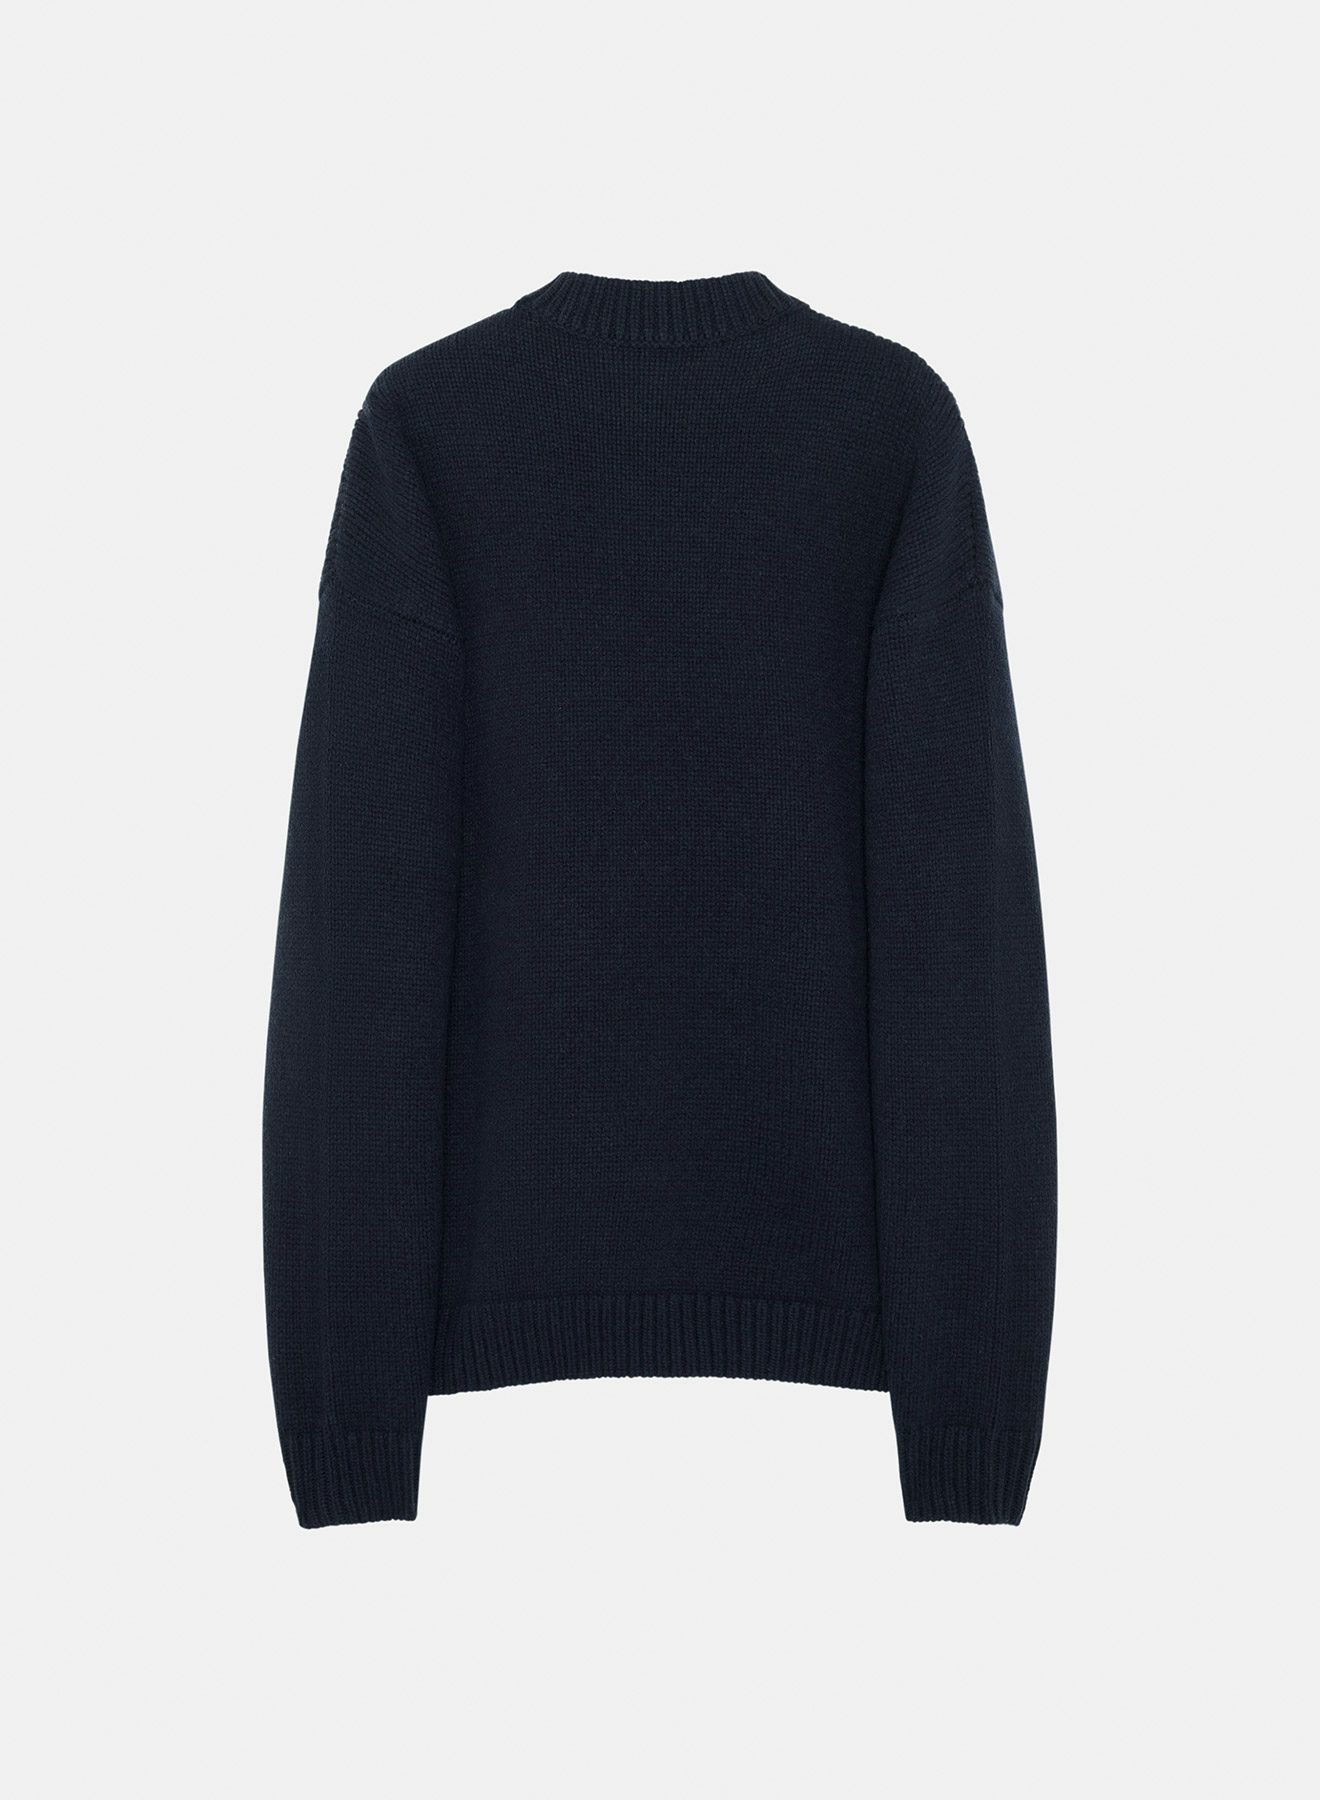 Merino wool sweater dark navy - Nina Ricci